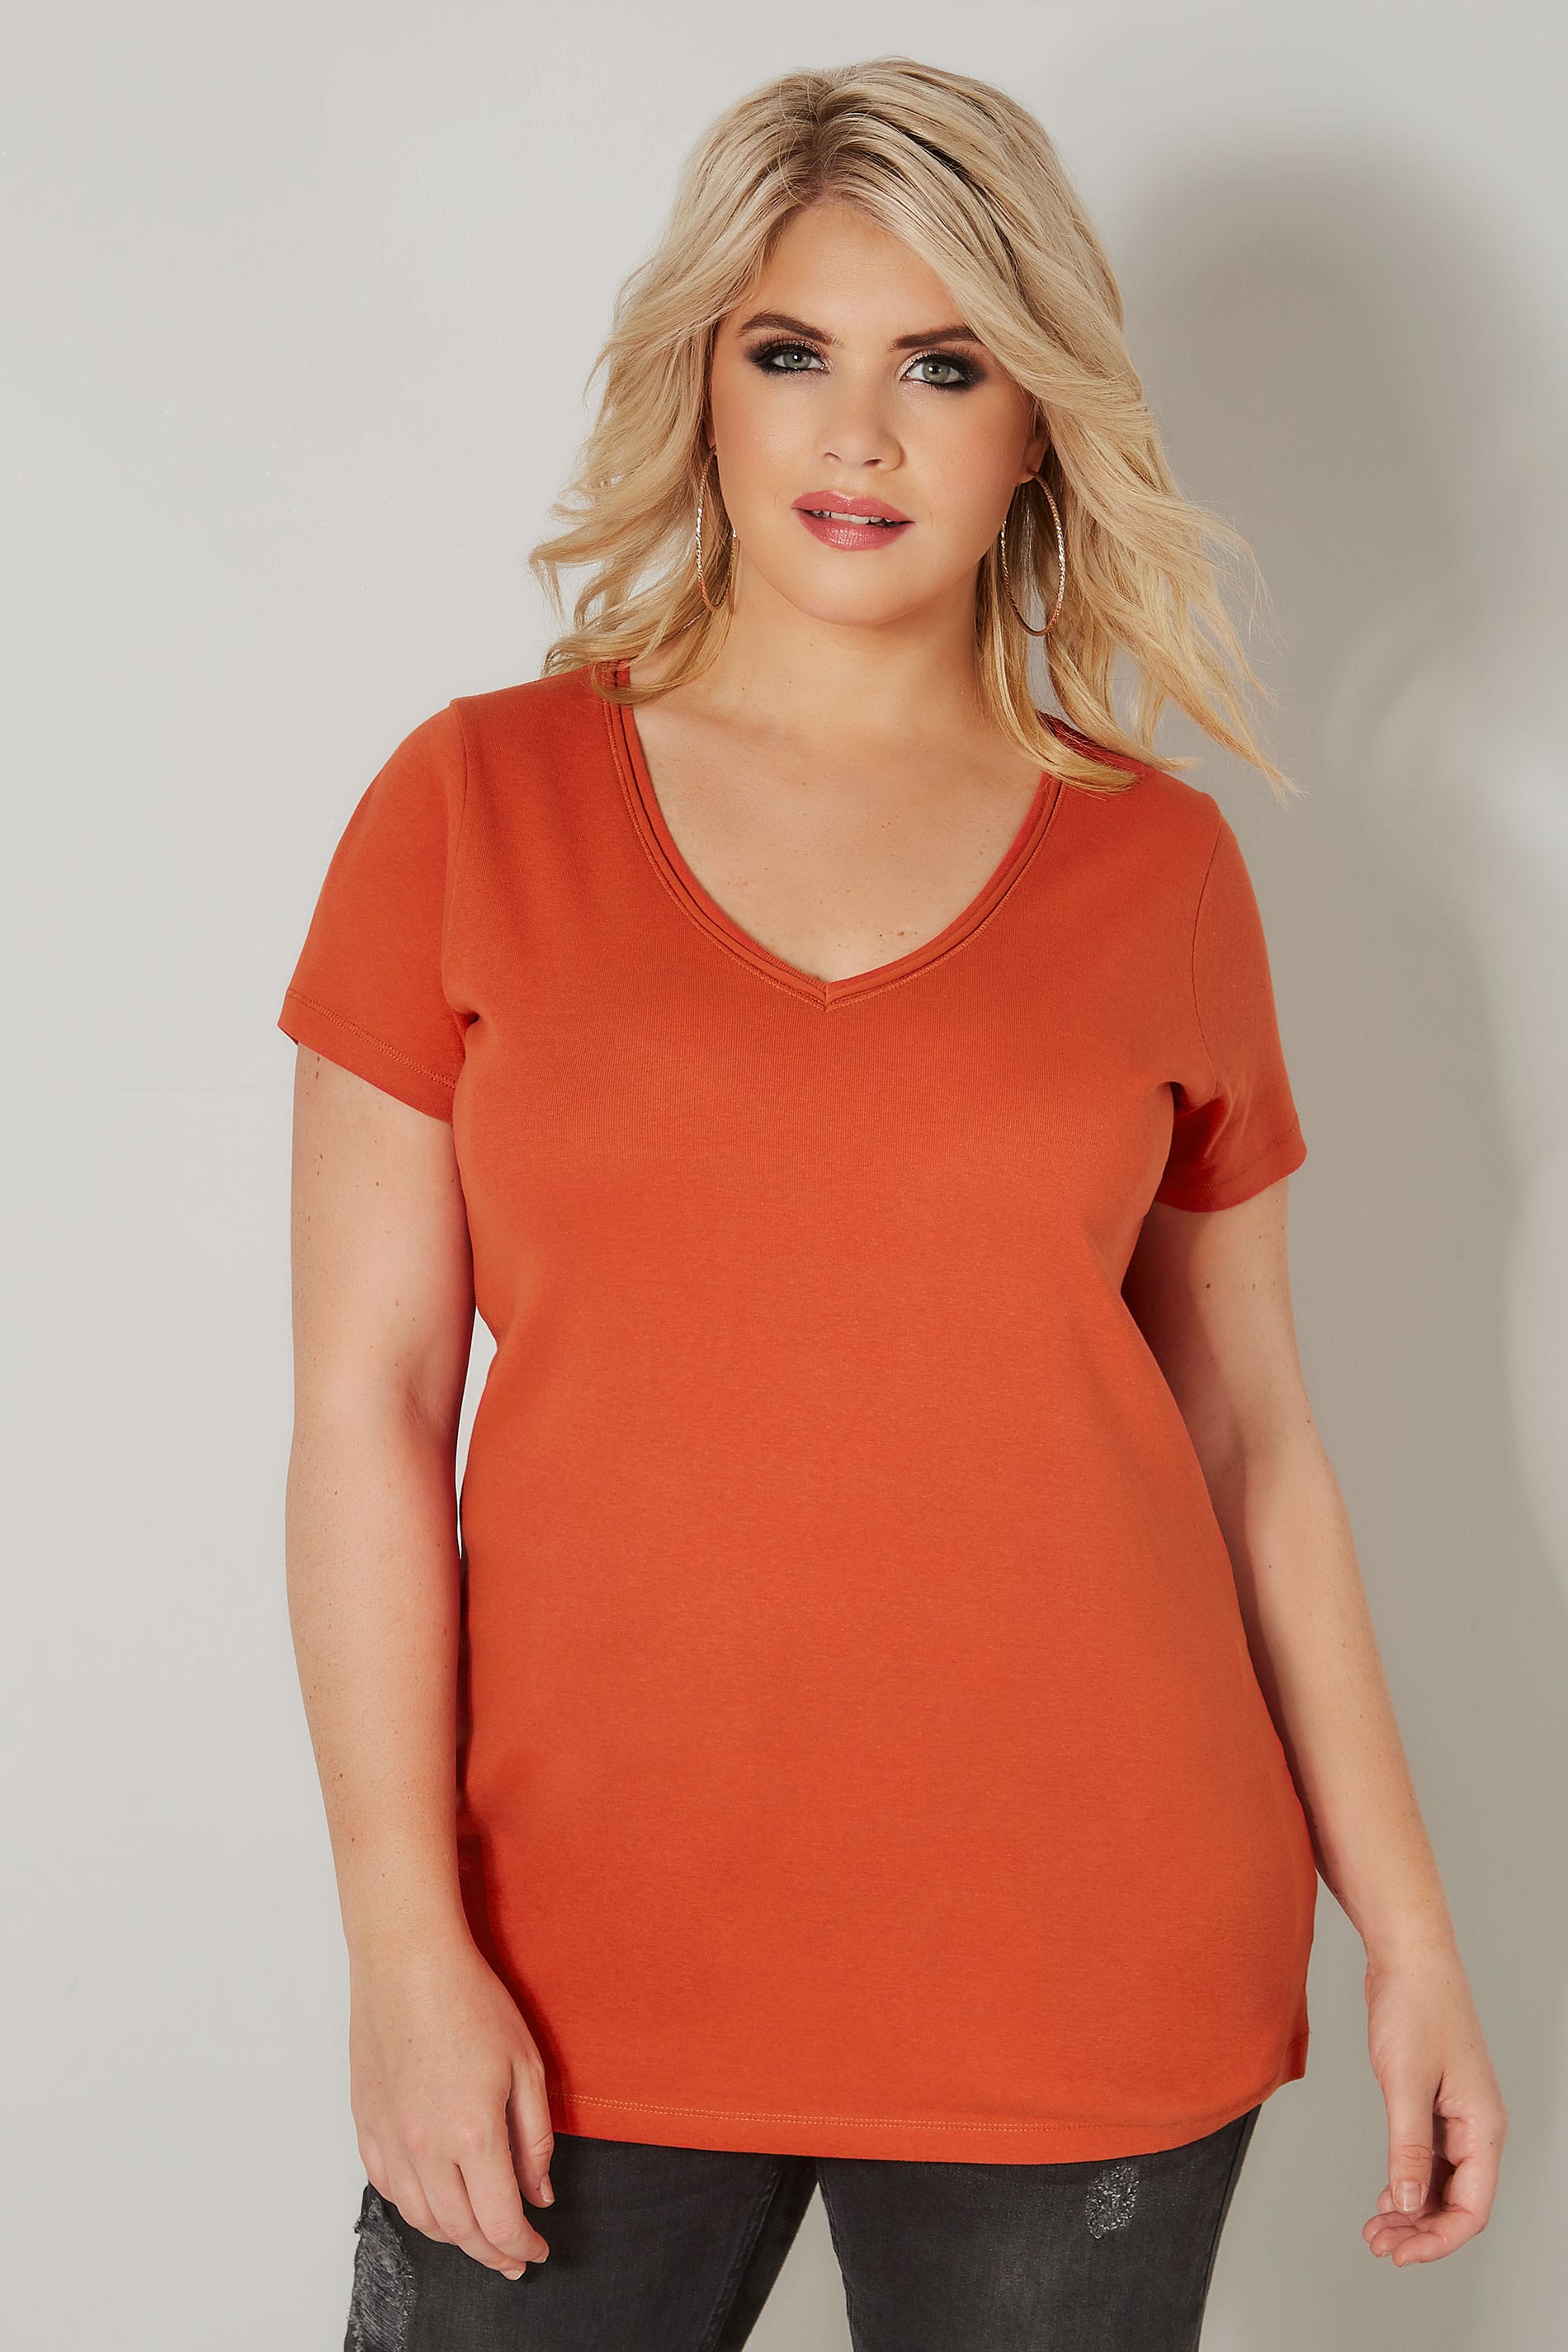 Dark Orange Basic V-Neck T-Shirt, plus size 16 to 36